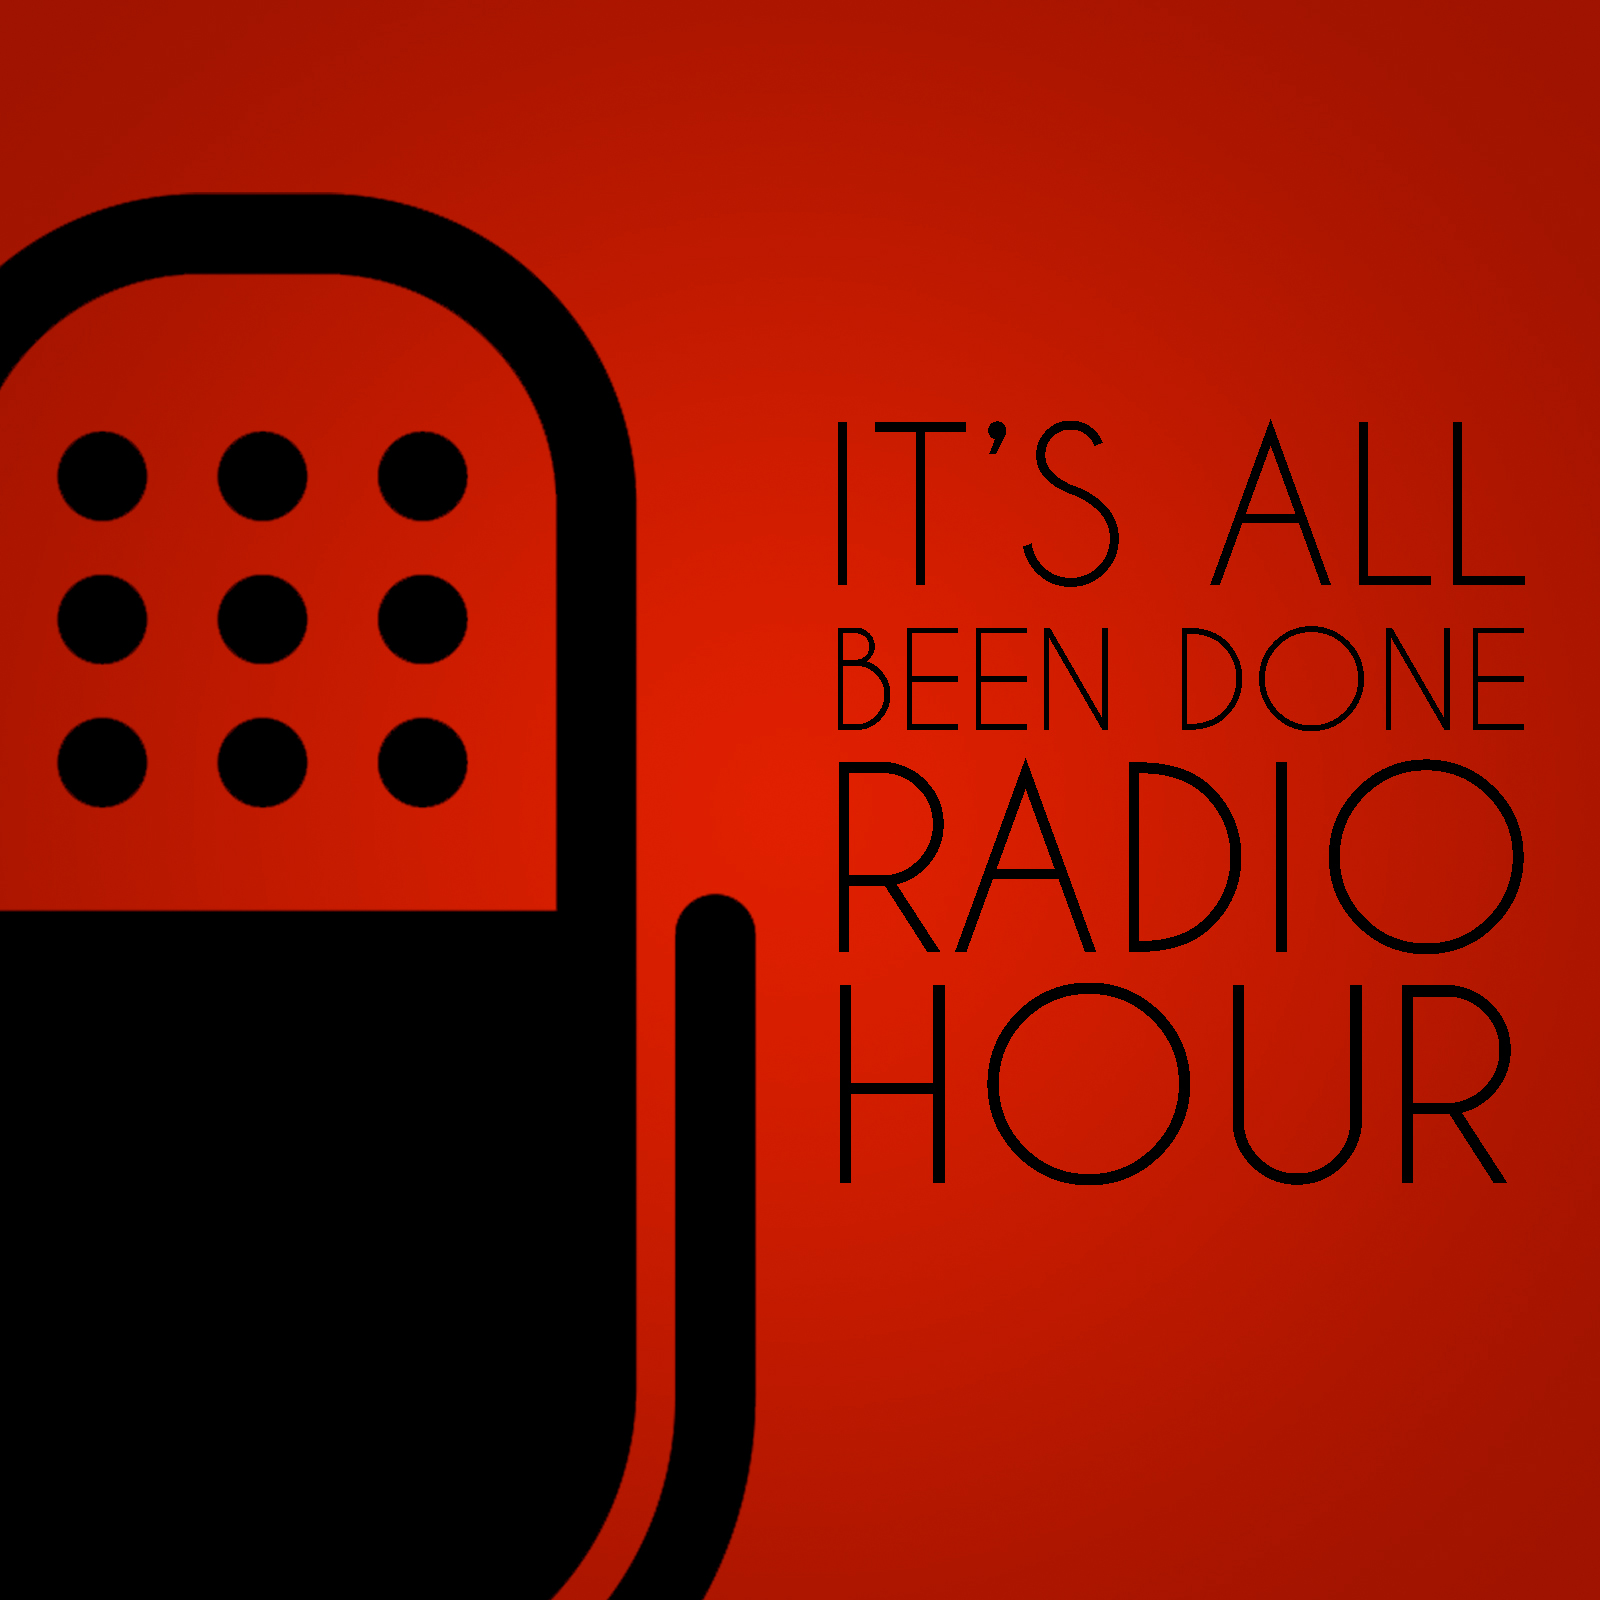 It's All Been Done Radio Hour | ColumbusMakesArt.com (en-US)